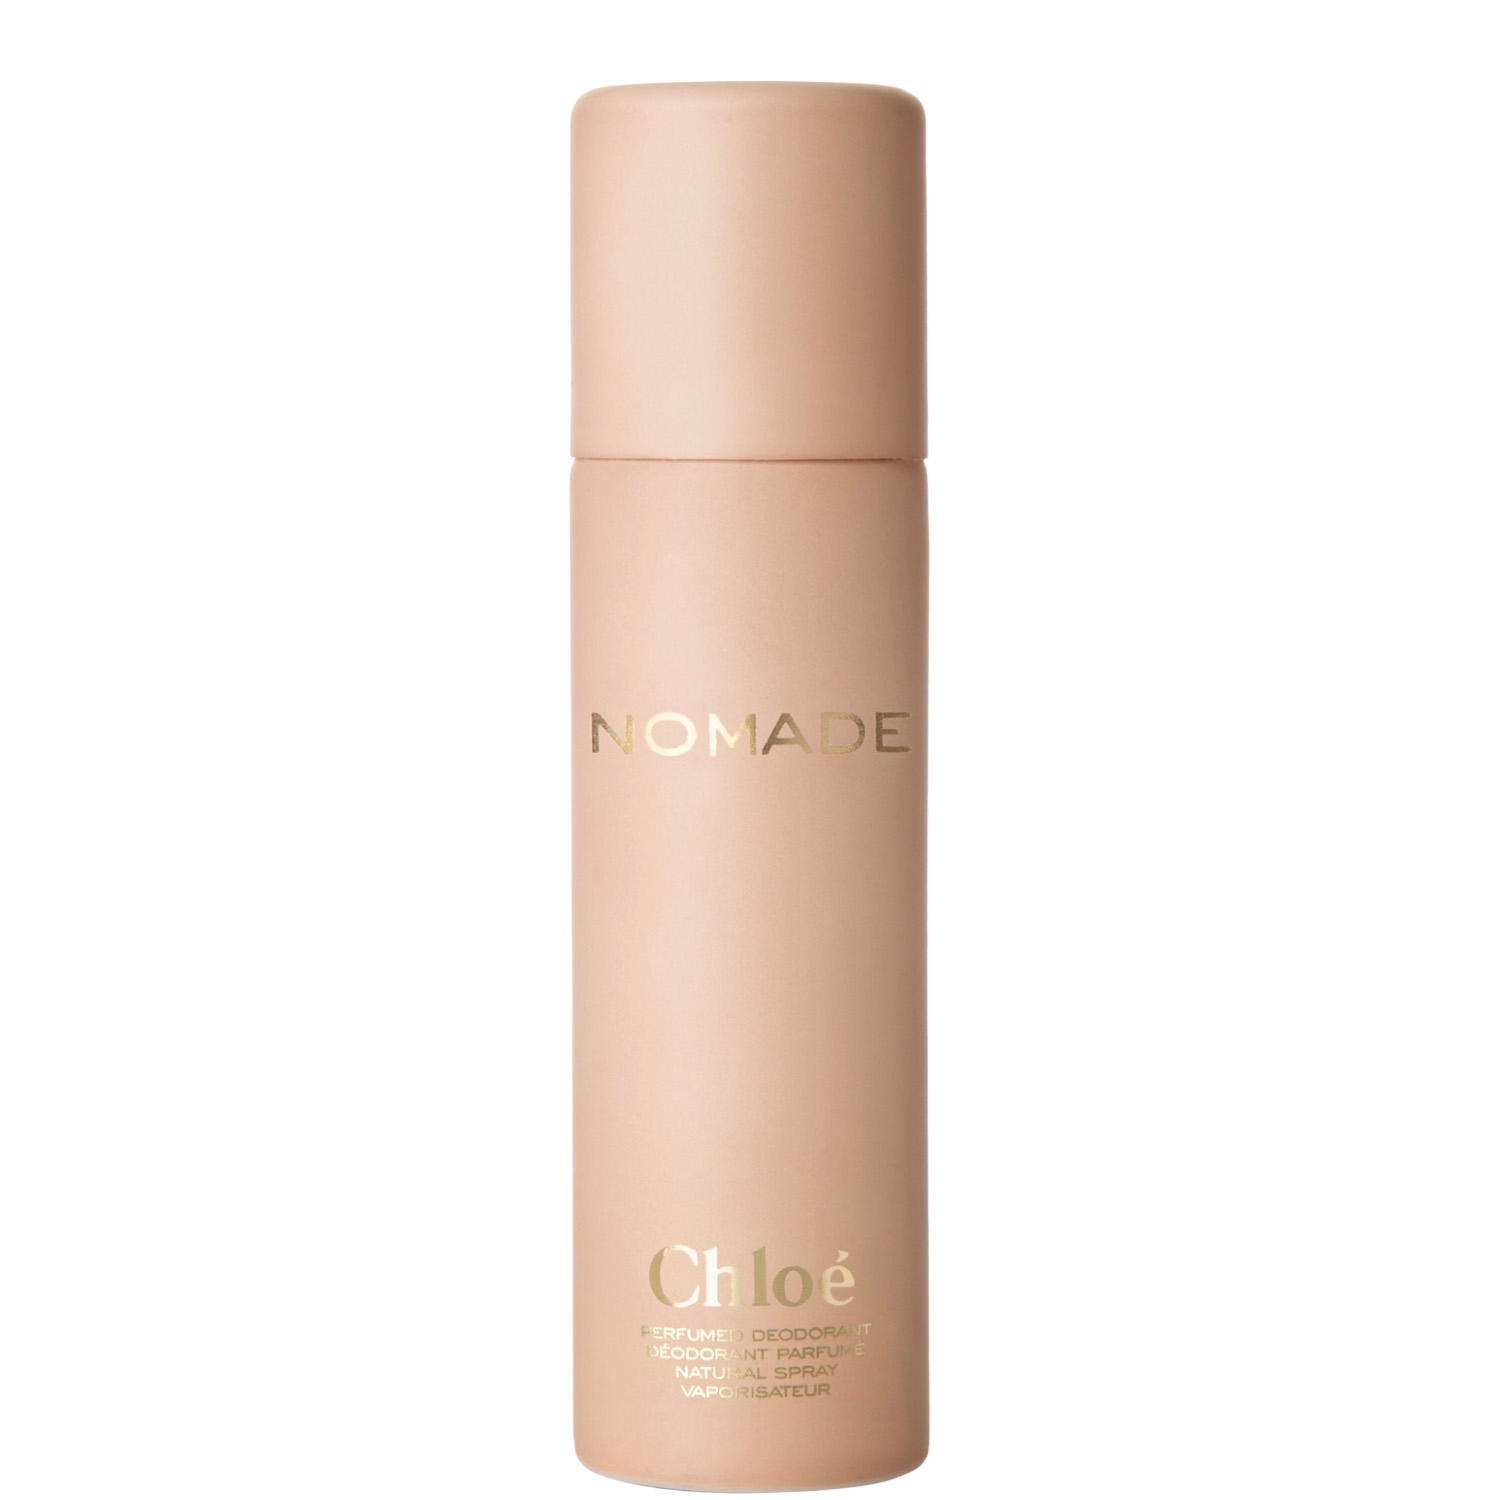 Chloé Nomade Deodorant Spray Natural 100ml